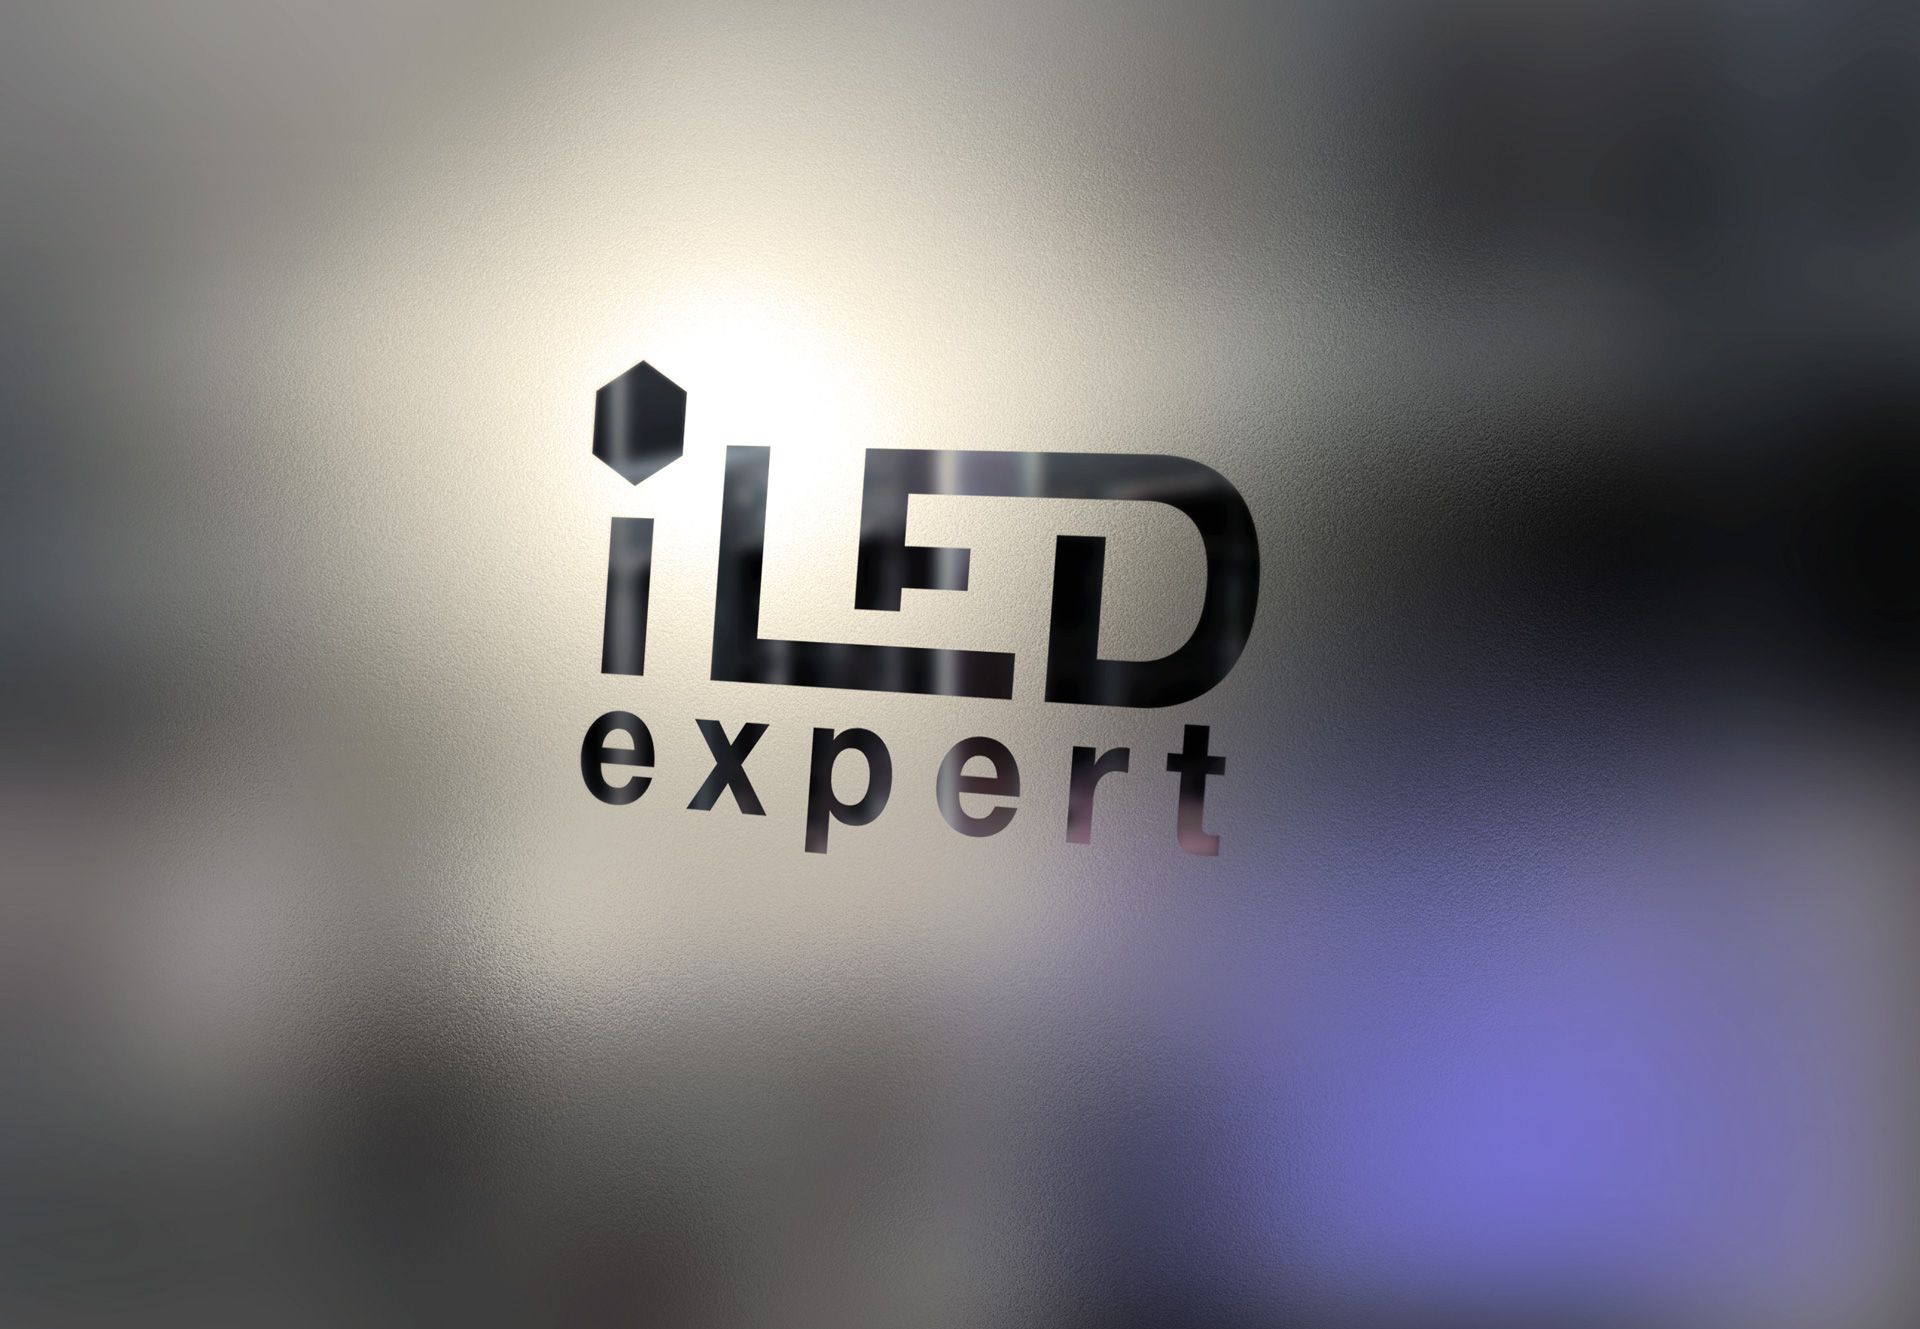 Логотип и фирменный стиль для iLed Expert - дизайнер Advokat72